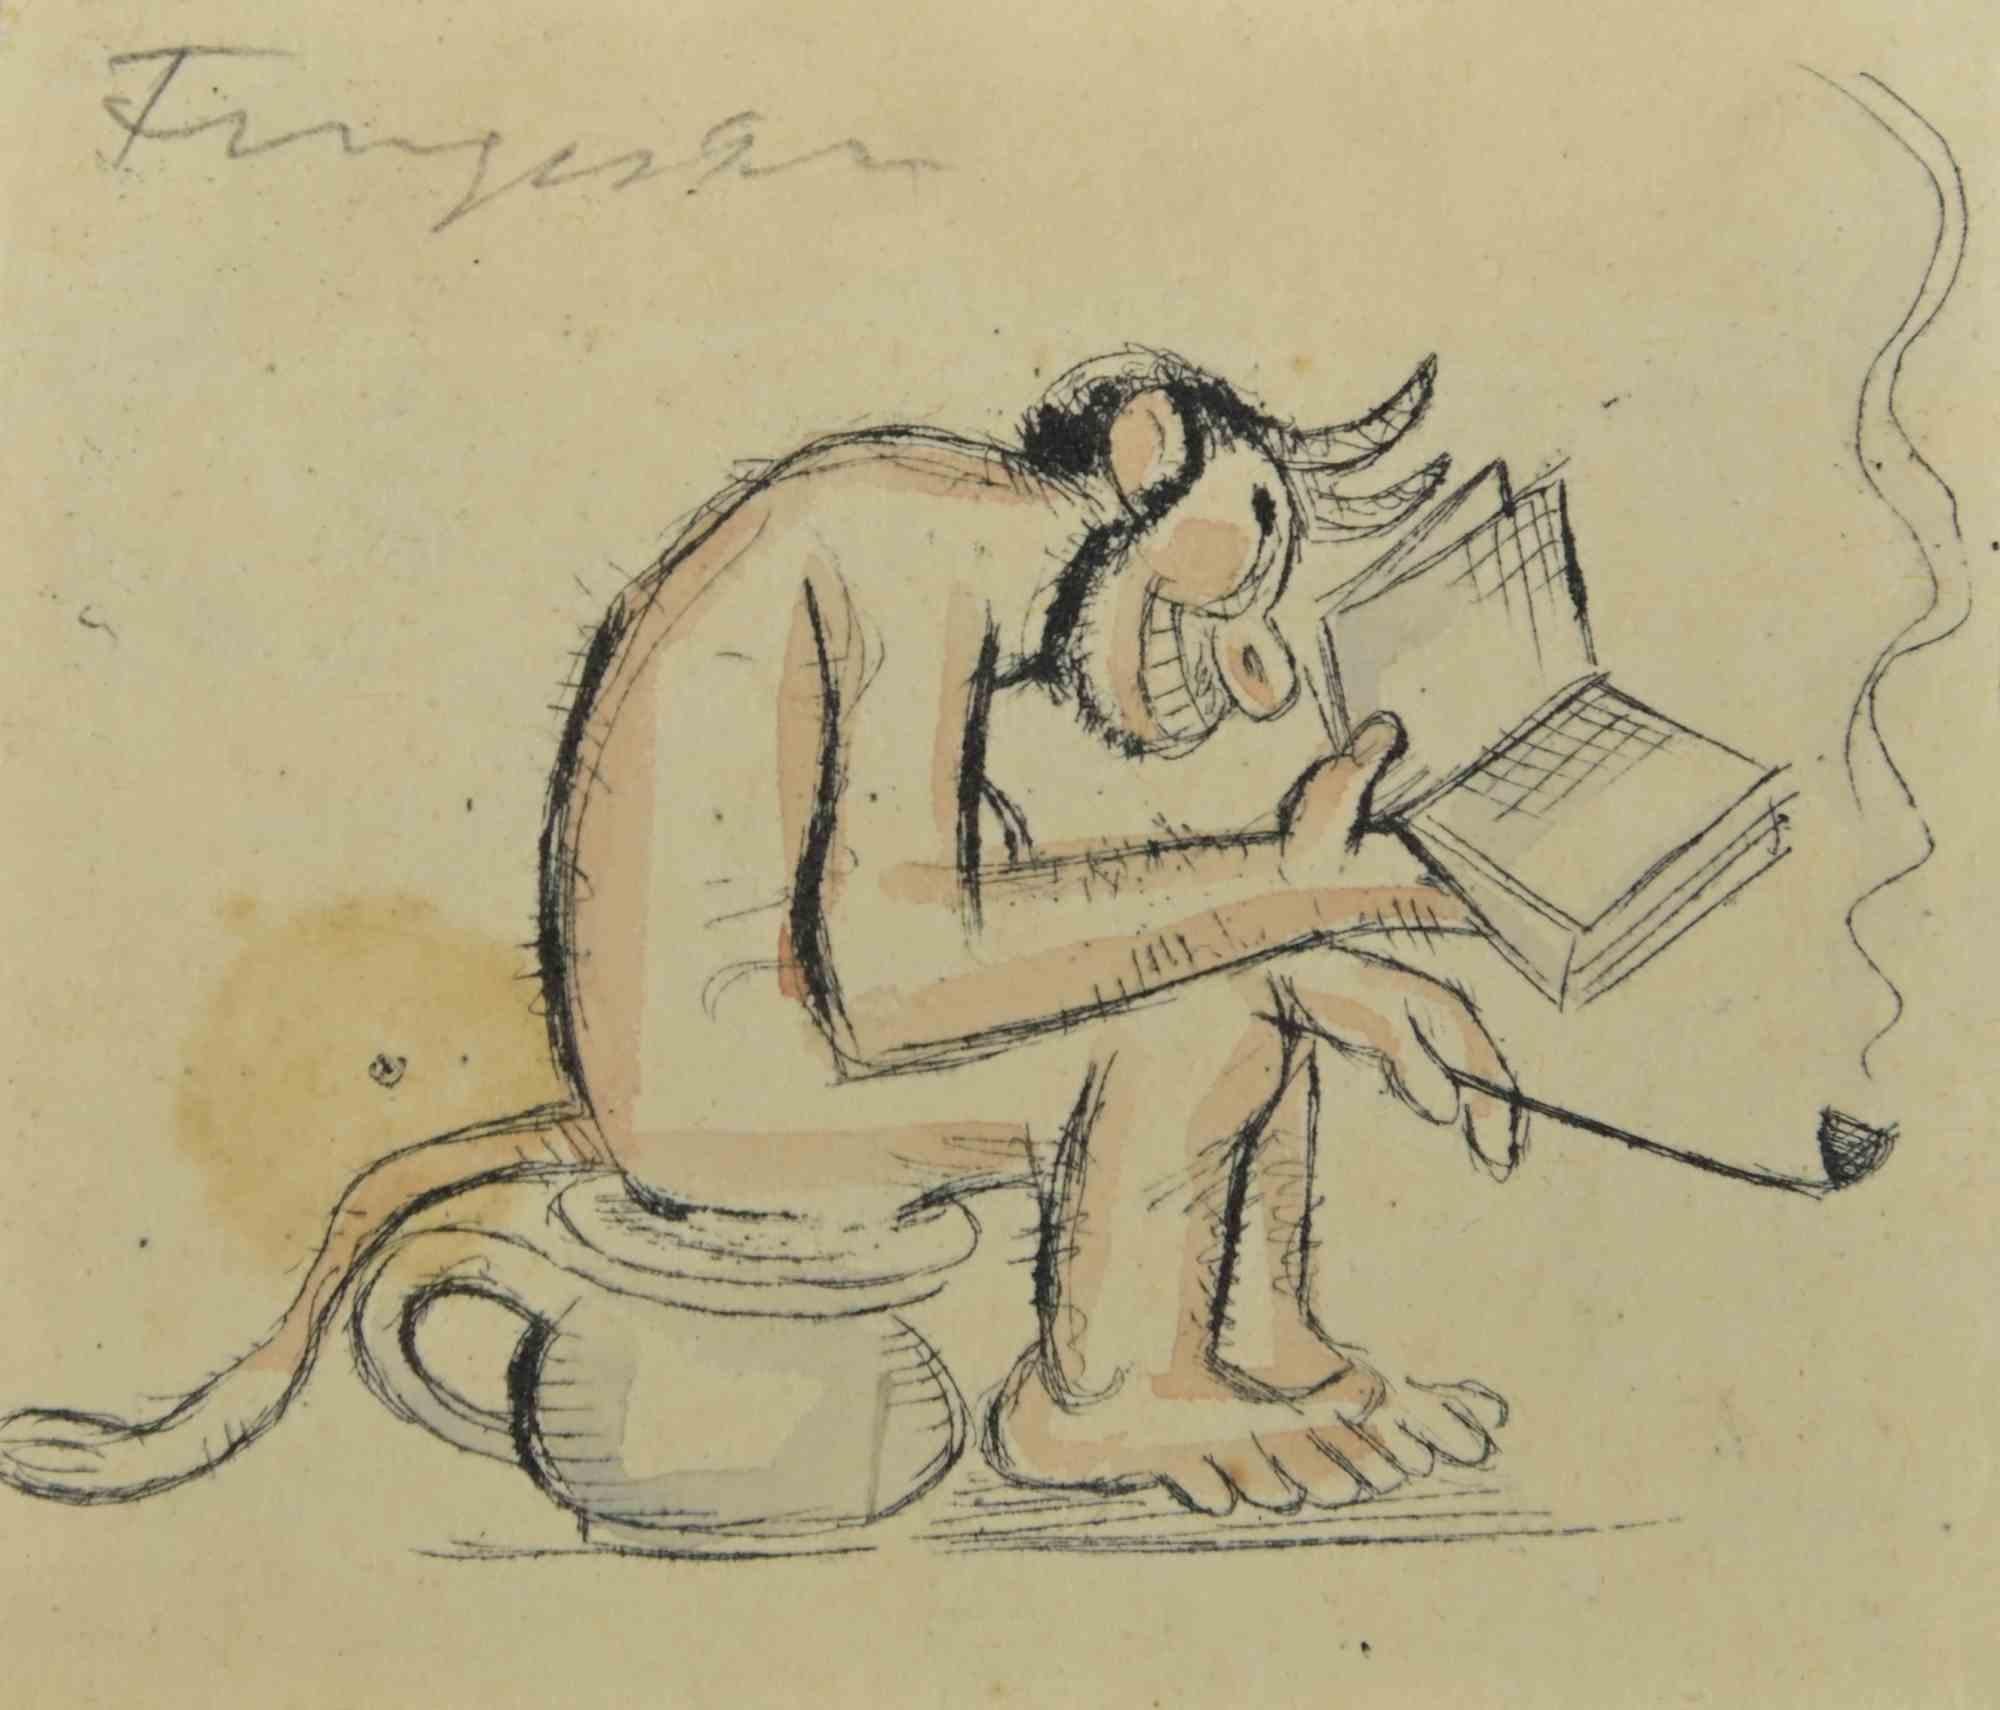 Ex Libris  ist ein farbiger Holzschnitt, der von  Michel Fingesten.

Handsigniert am oberen Rand.

Gute Bedingungen.

Michel Fingesten (1884 - 1943) war ein tschechischer Maler und Graveur jüdischer Herkunft. Er gilt als einer der größten